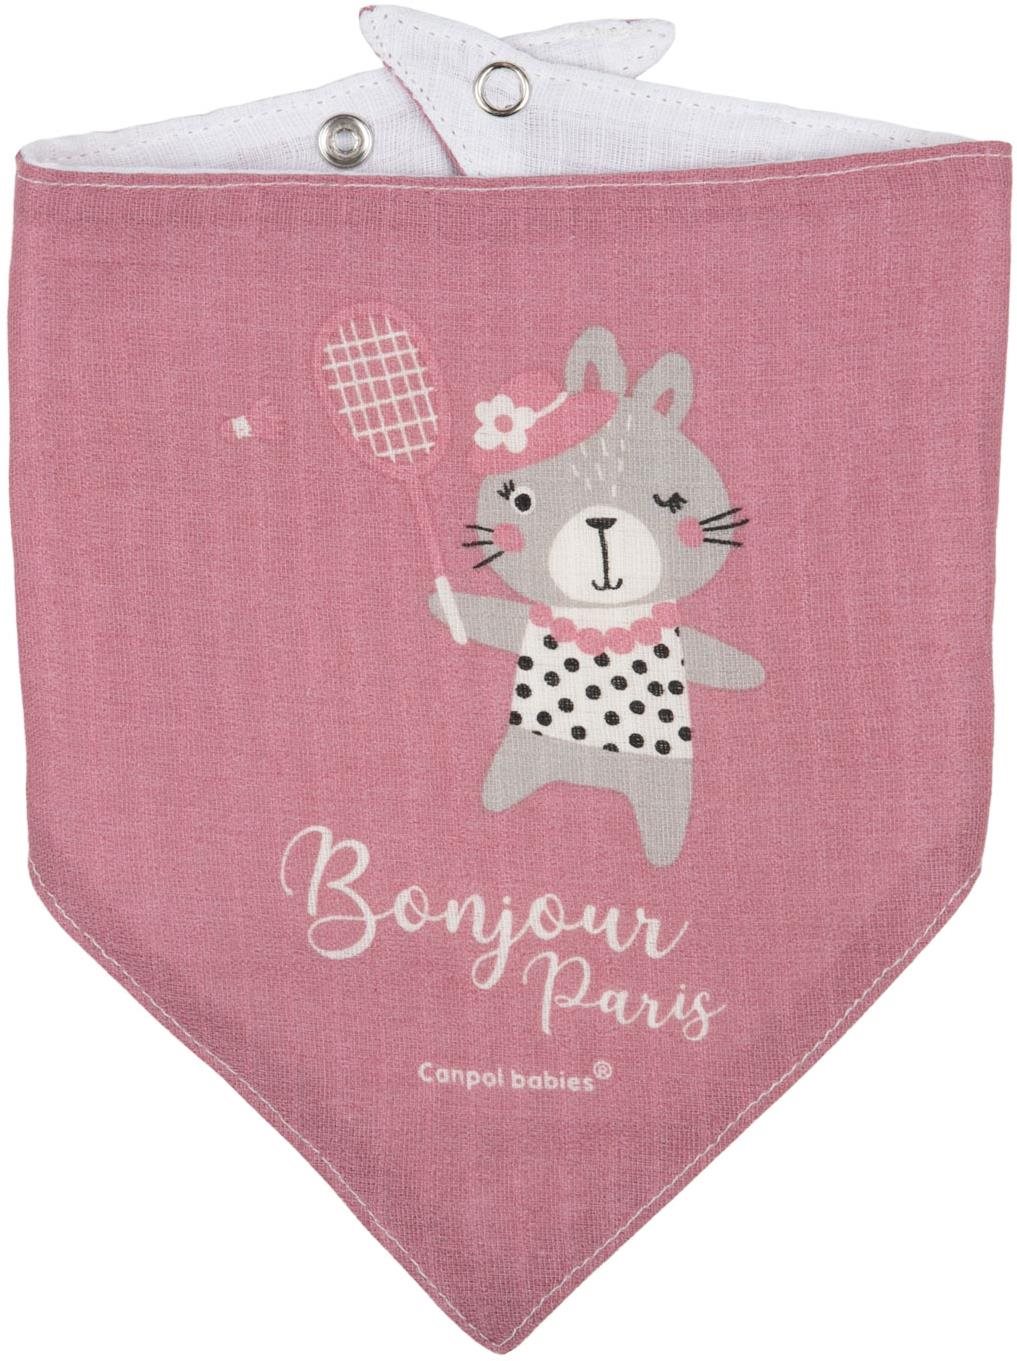 Canpol babies Muszlin nyálkendő Bonjour Paris rózsaszín, 2 db